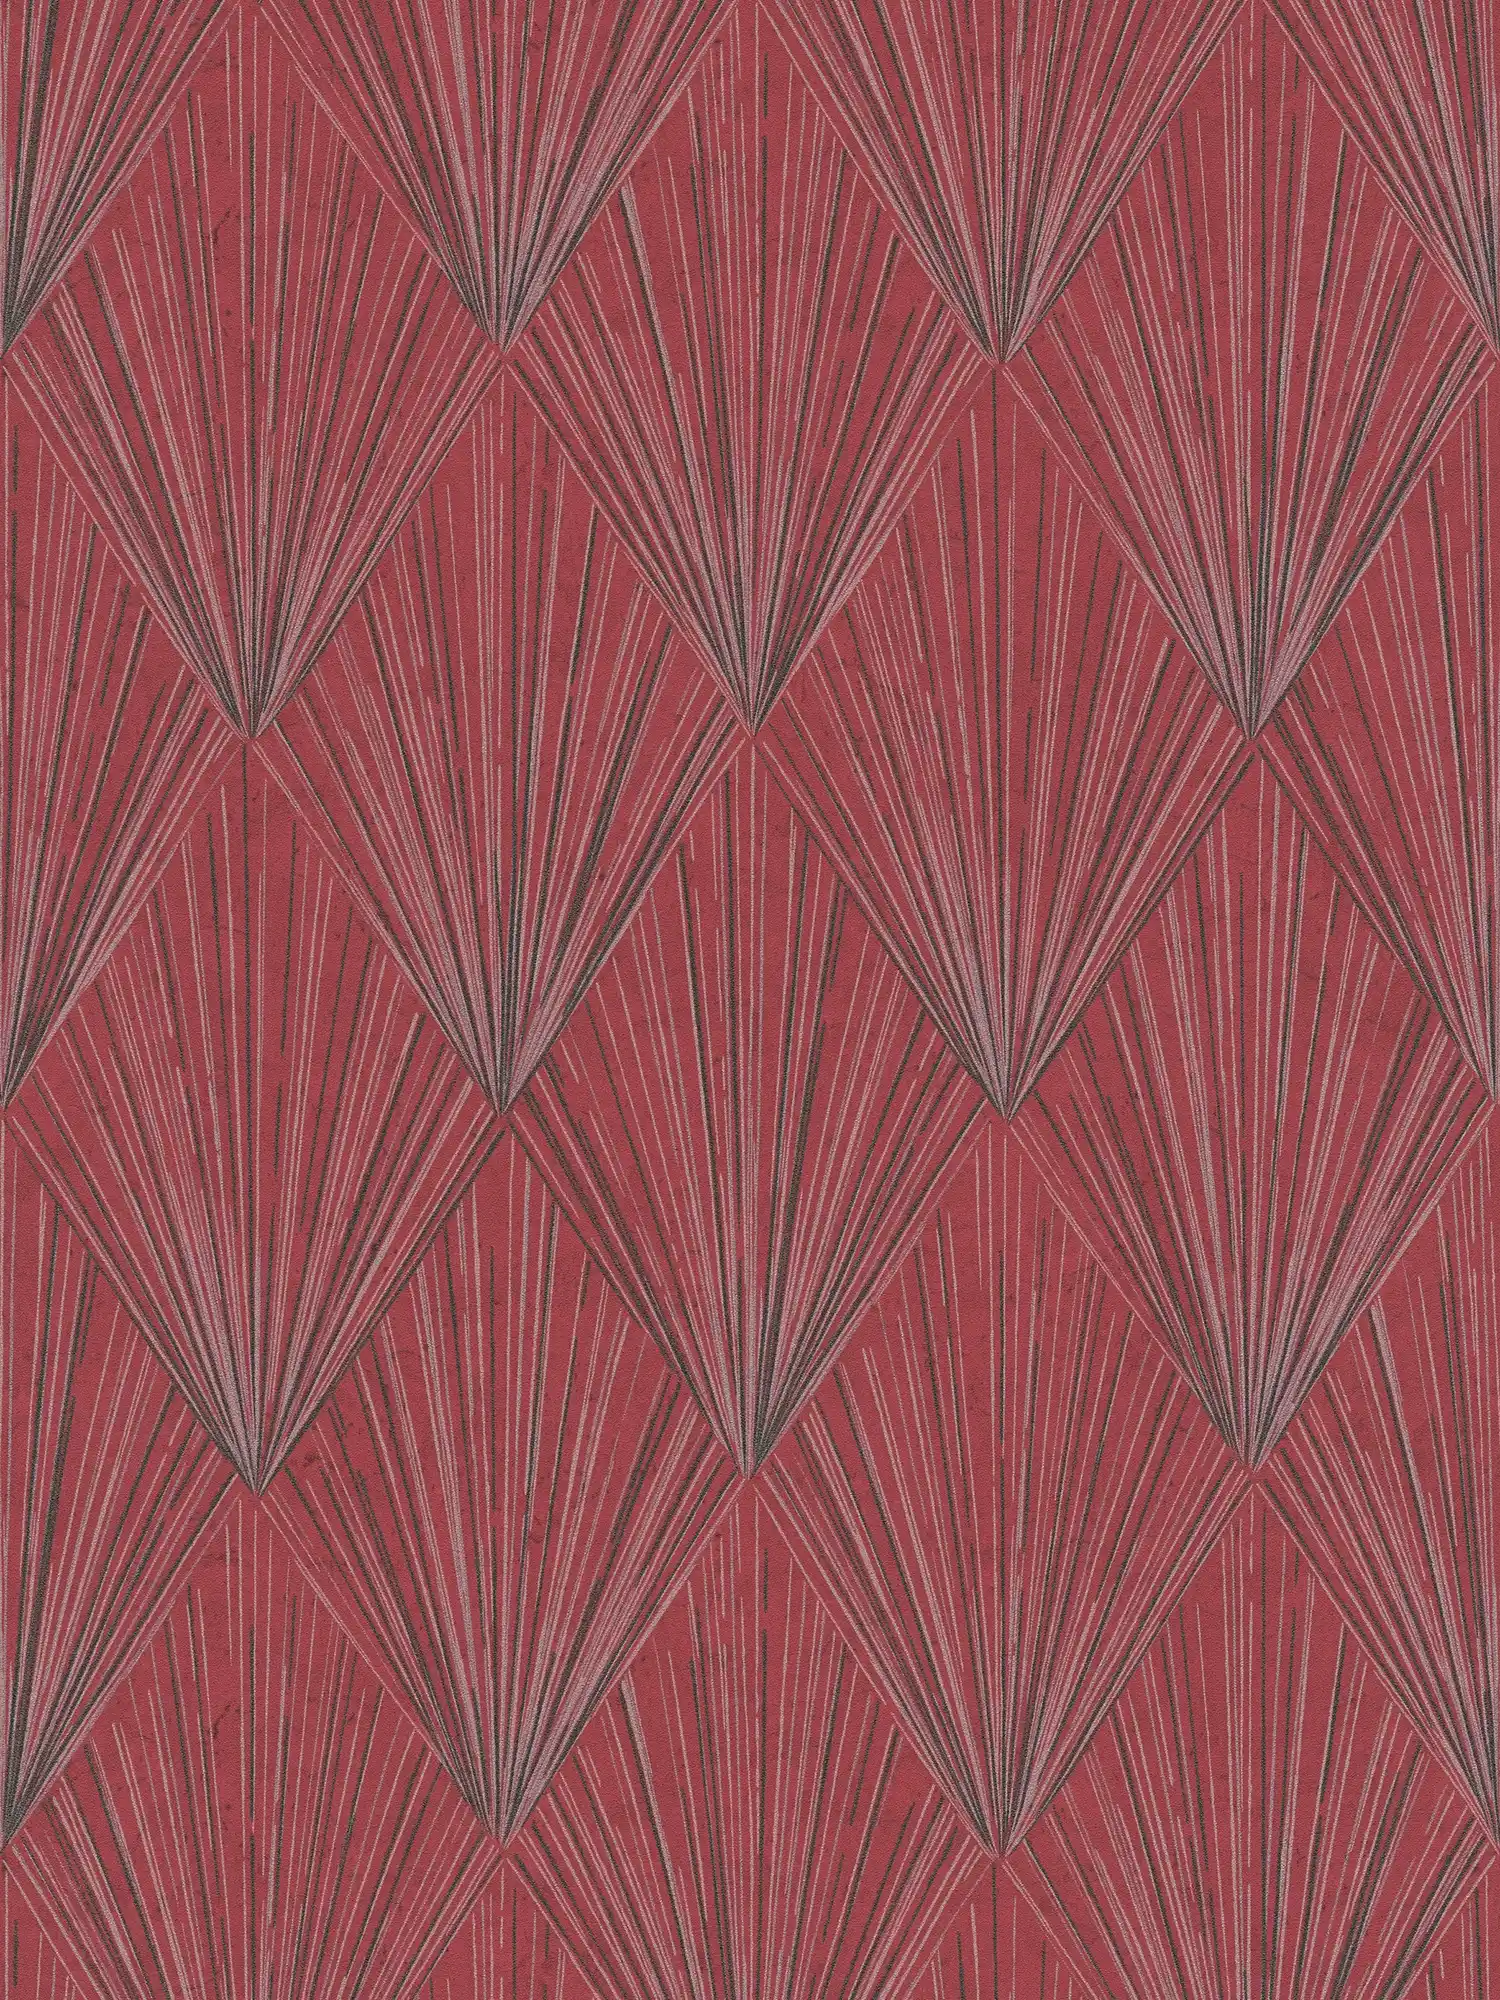 Papel pintado con un moderno diseño Art Deco y efecto metálico - metálico, rojo, negro
